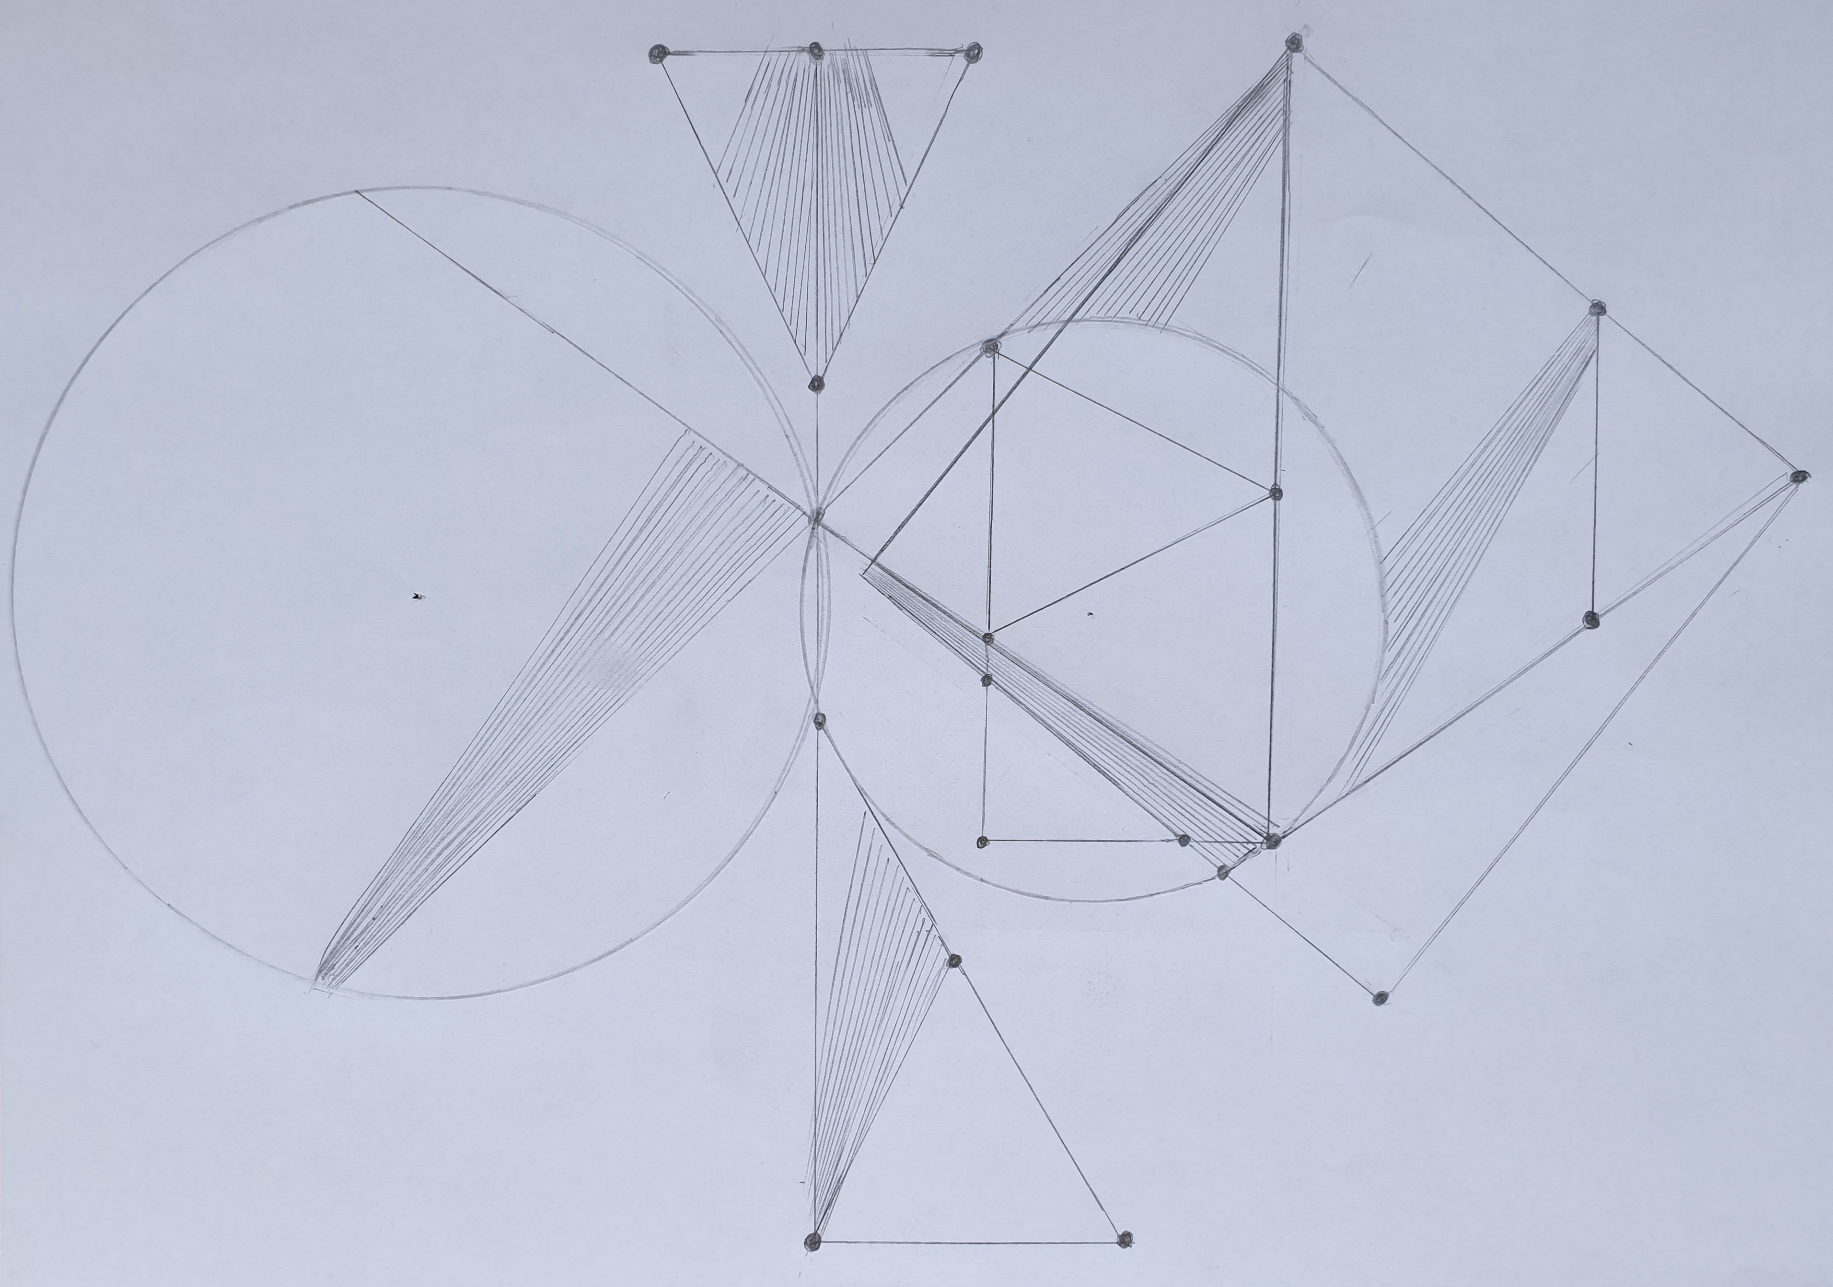 [url=https://gradini-fractale-geometrice.webnode.ro/_files/200000017-8b3b68b3b8/8-51.jpg]Fractal unic desenat de mine, cu tema iluziei optice a triunghiului. Iluzia 
este la triunghiul de sus din cercul mic, care poate fi vazut cu varful 
in dreapta (est), o alta pozitie cu varful in stanga colt, (sud-vest) 
sau in pozitia cu varful inspre (nord-vest).[/url]